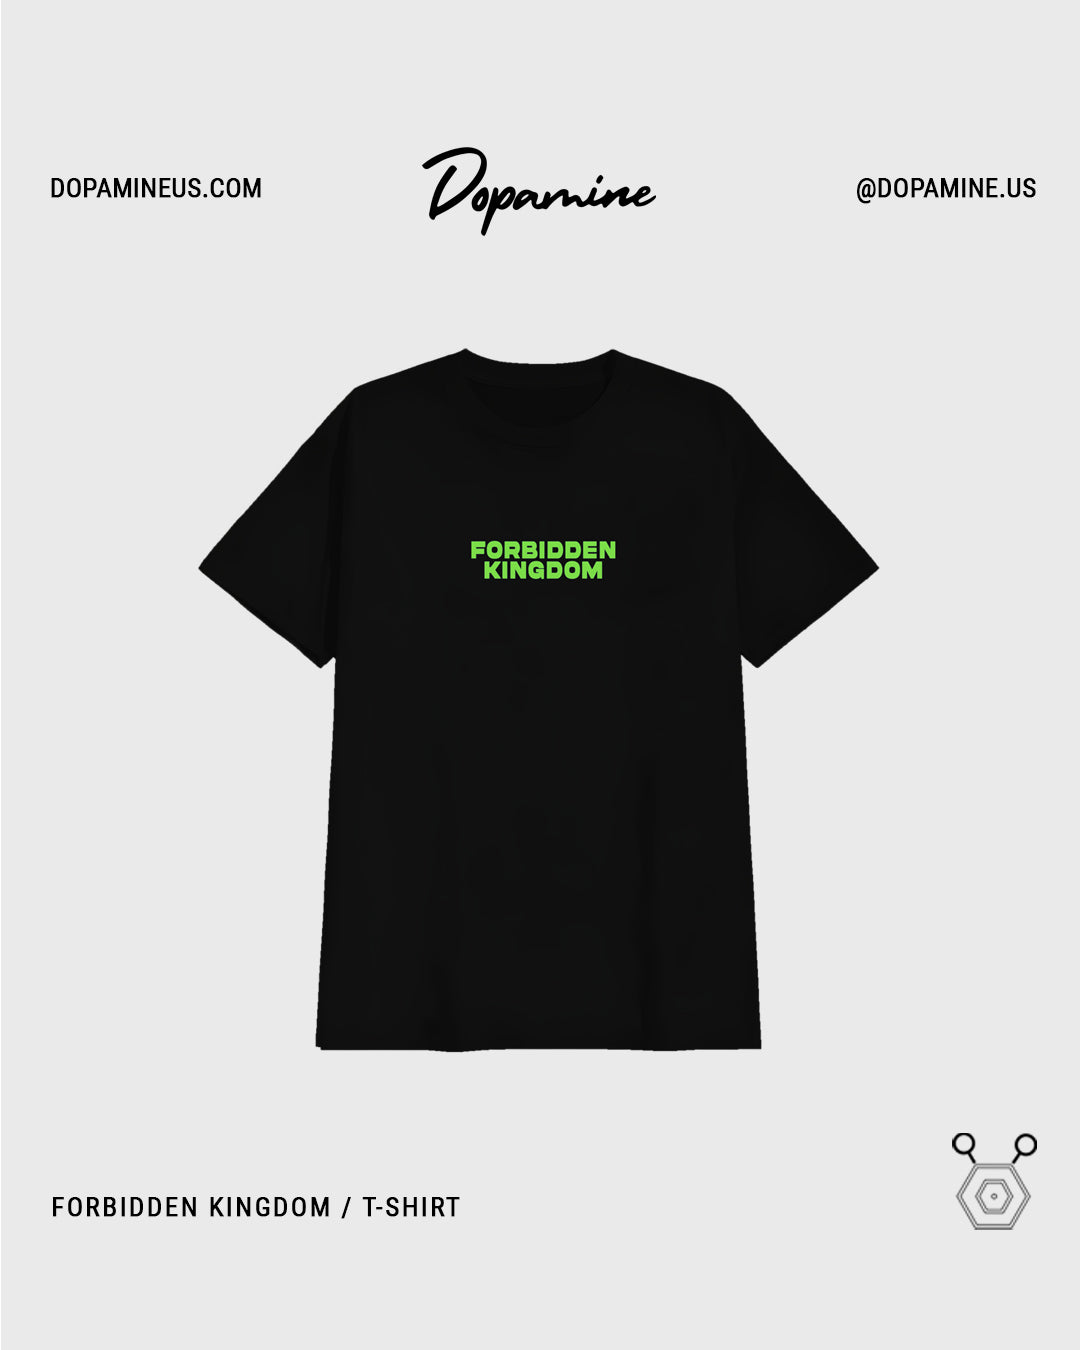 Dopamine Head - T-Shirt